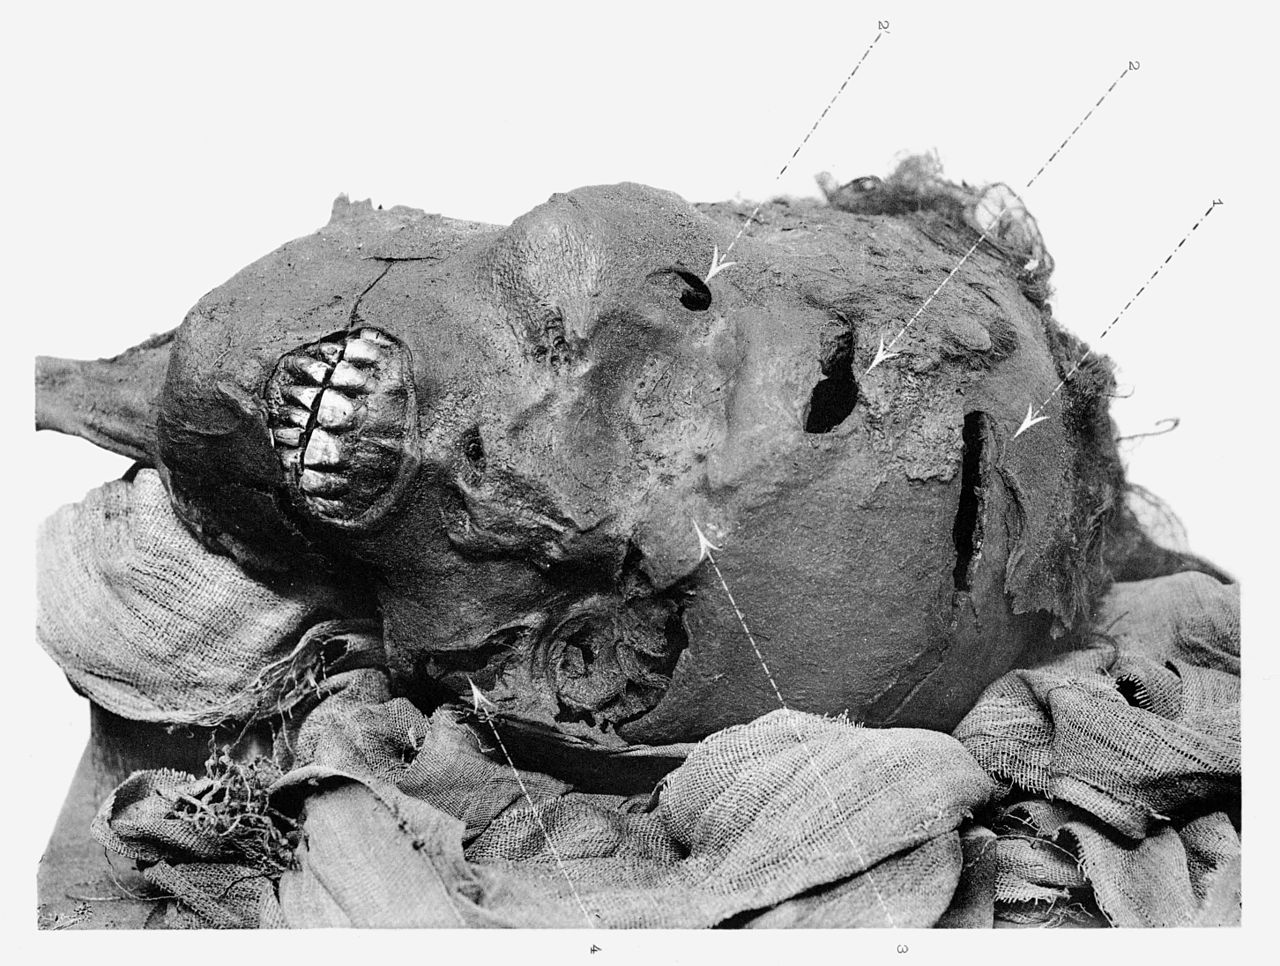 Głowa Sekenenre z zaznaczonymi miejscami ran odkrytymi podczas pierwszych badań mumii. Fot.: Wikimedia Commons/dp